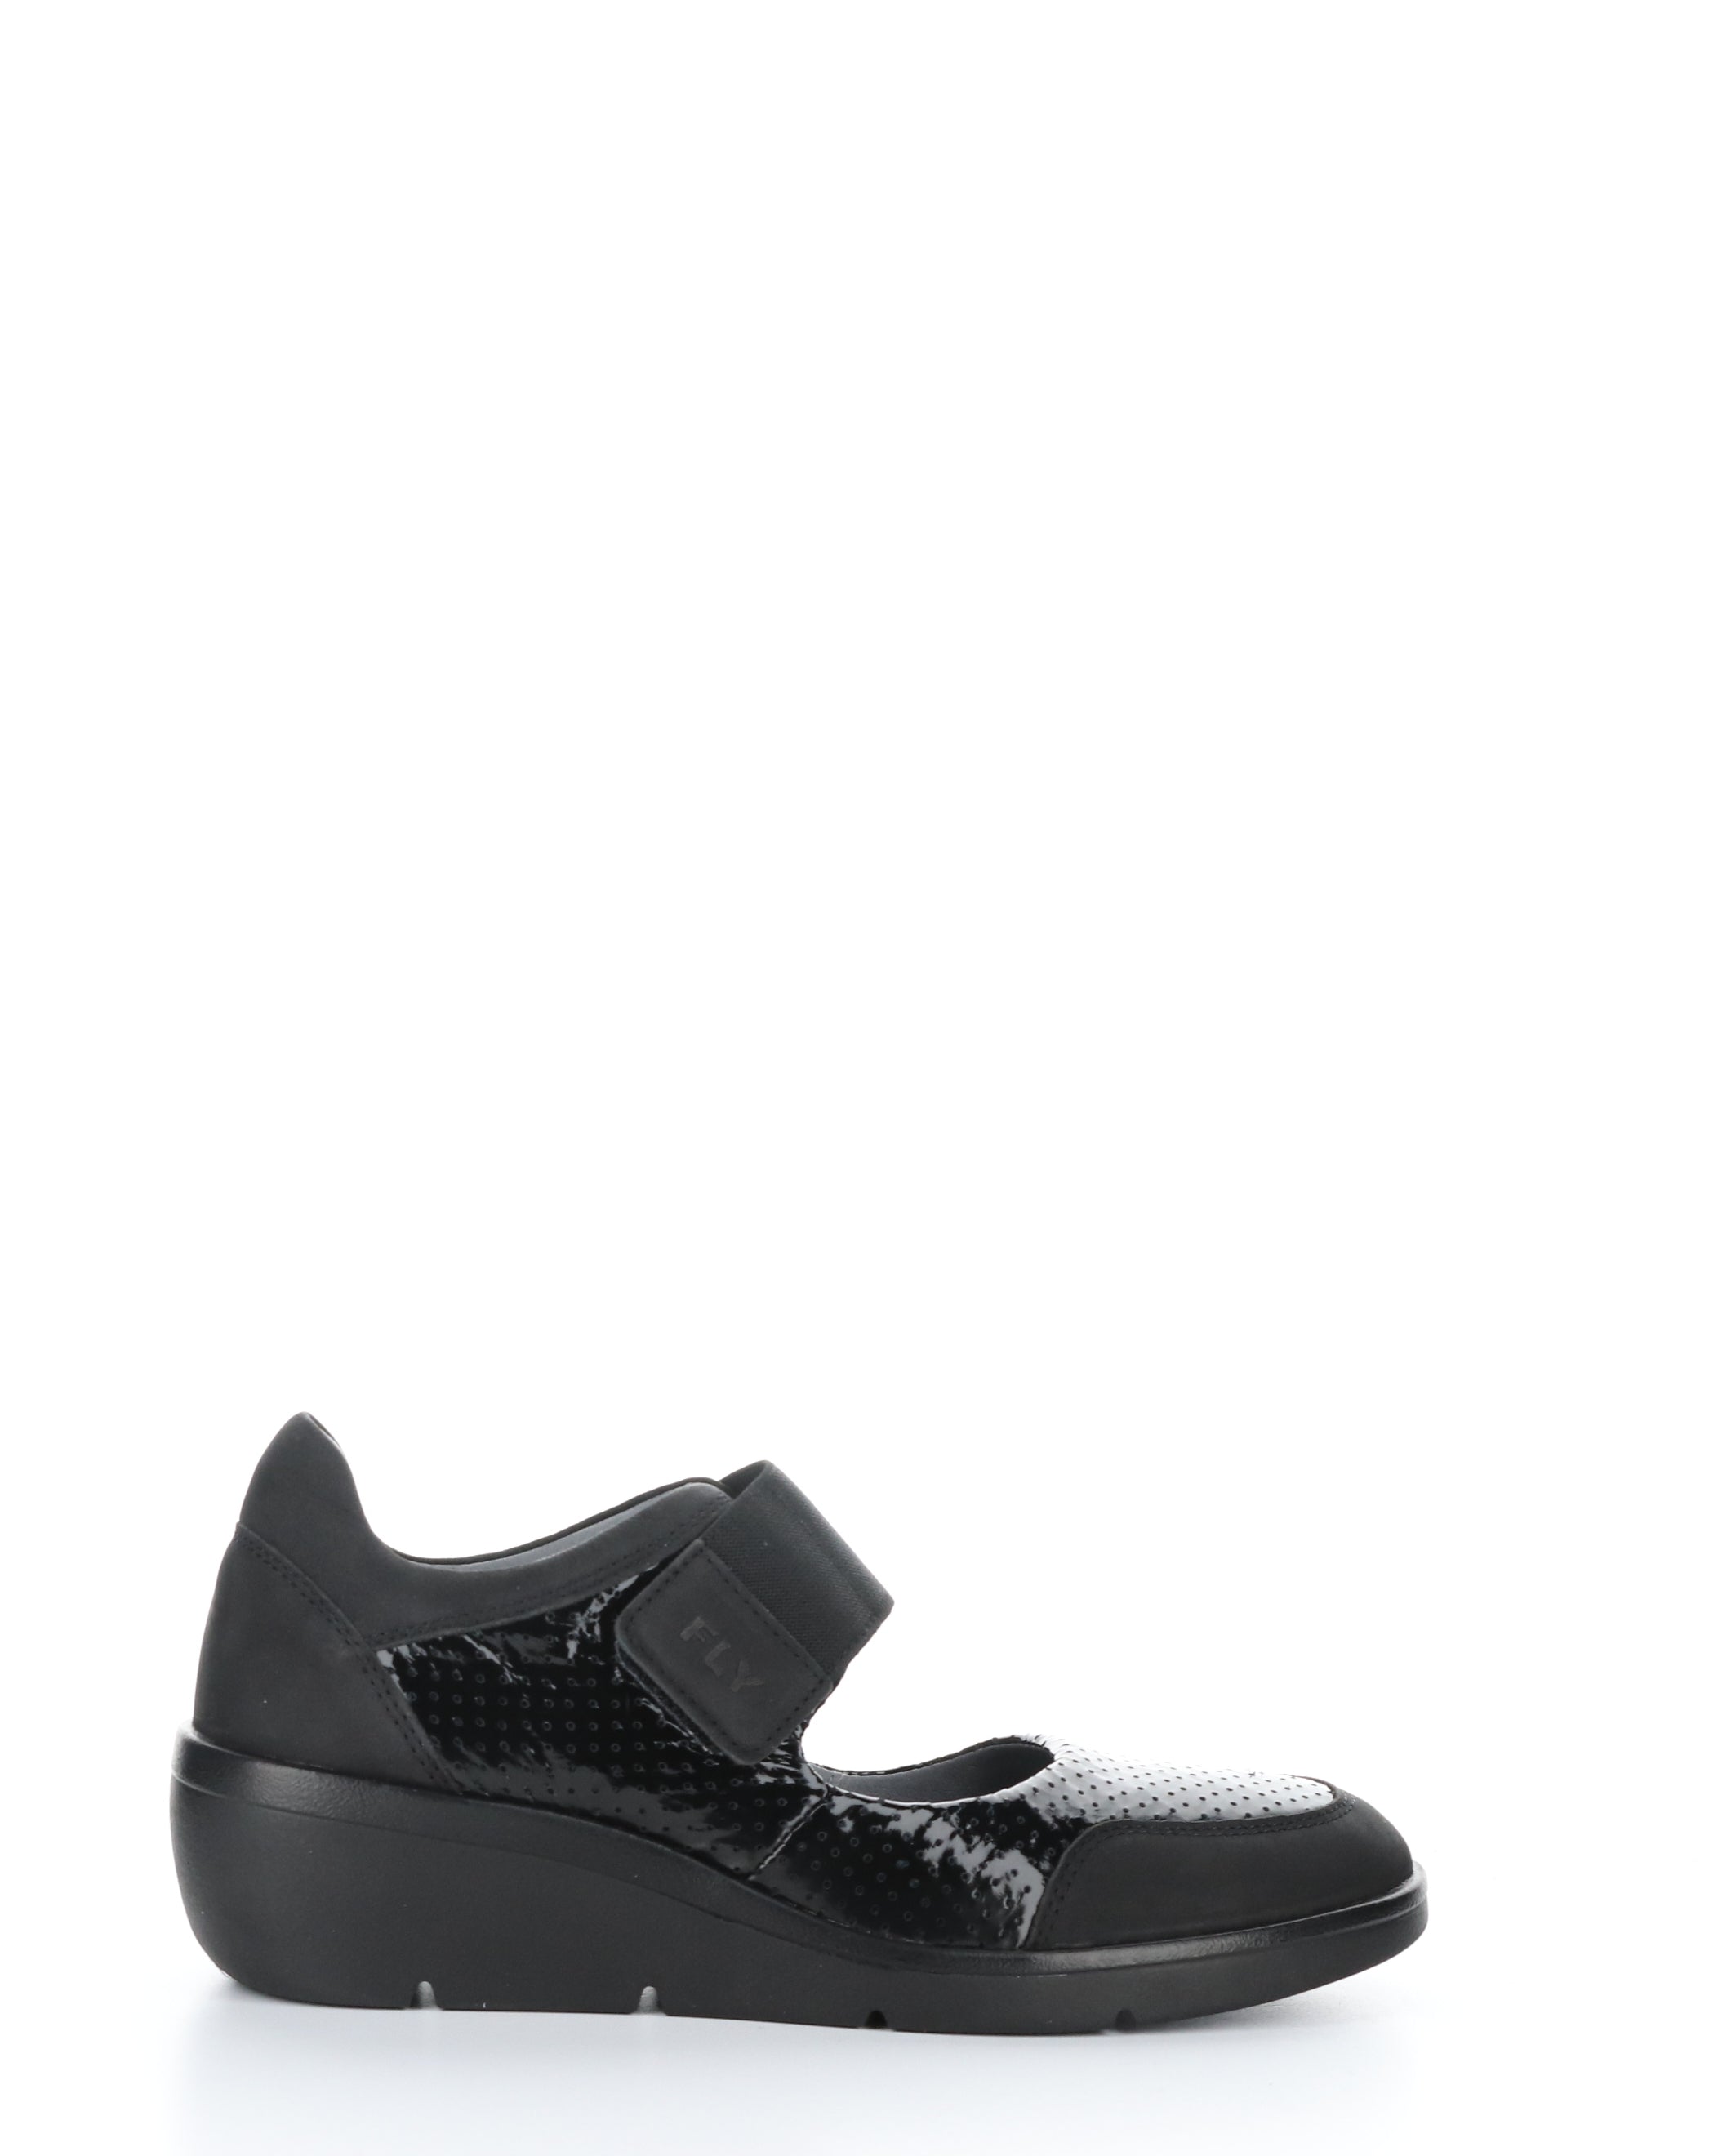 Fly London Naje Black Leather Shoe P601583 000